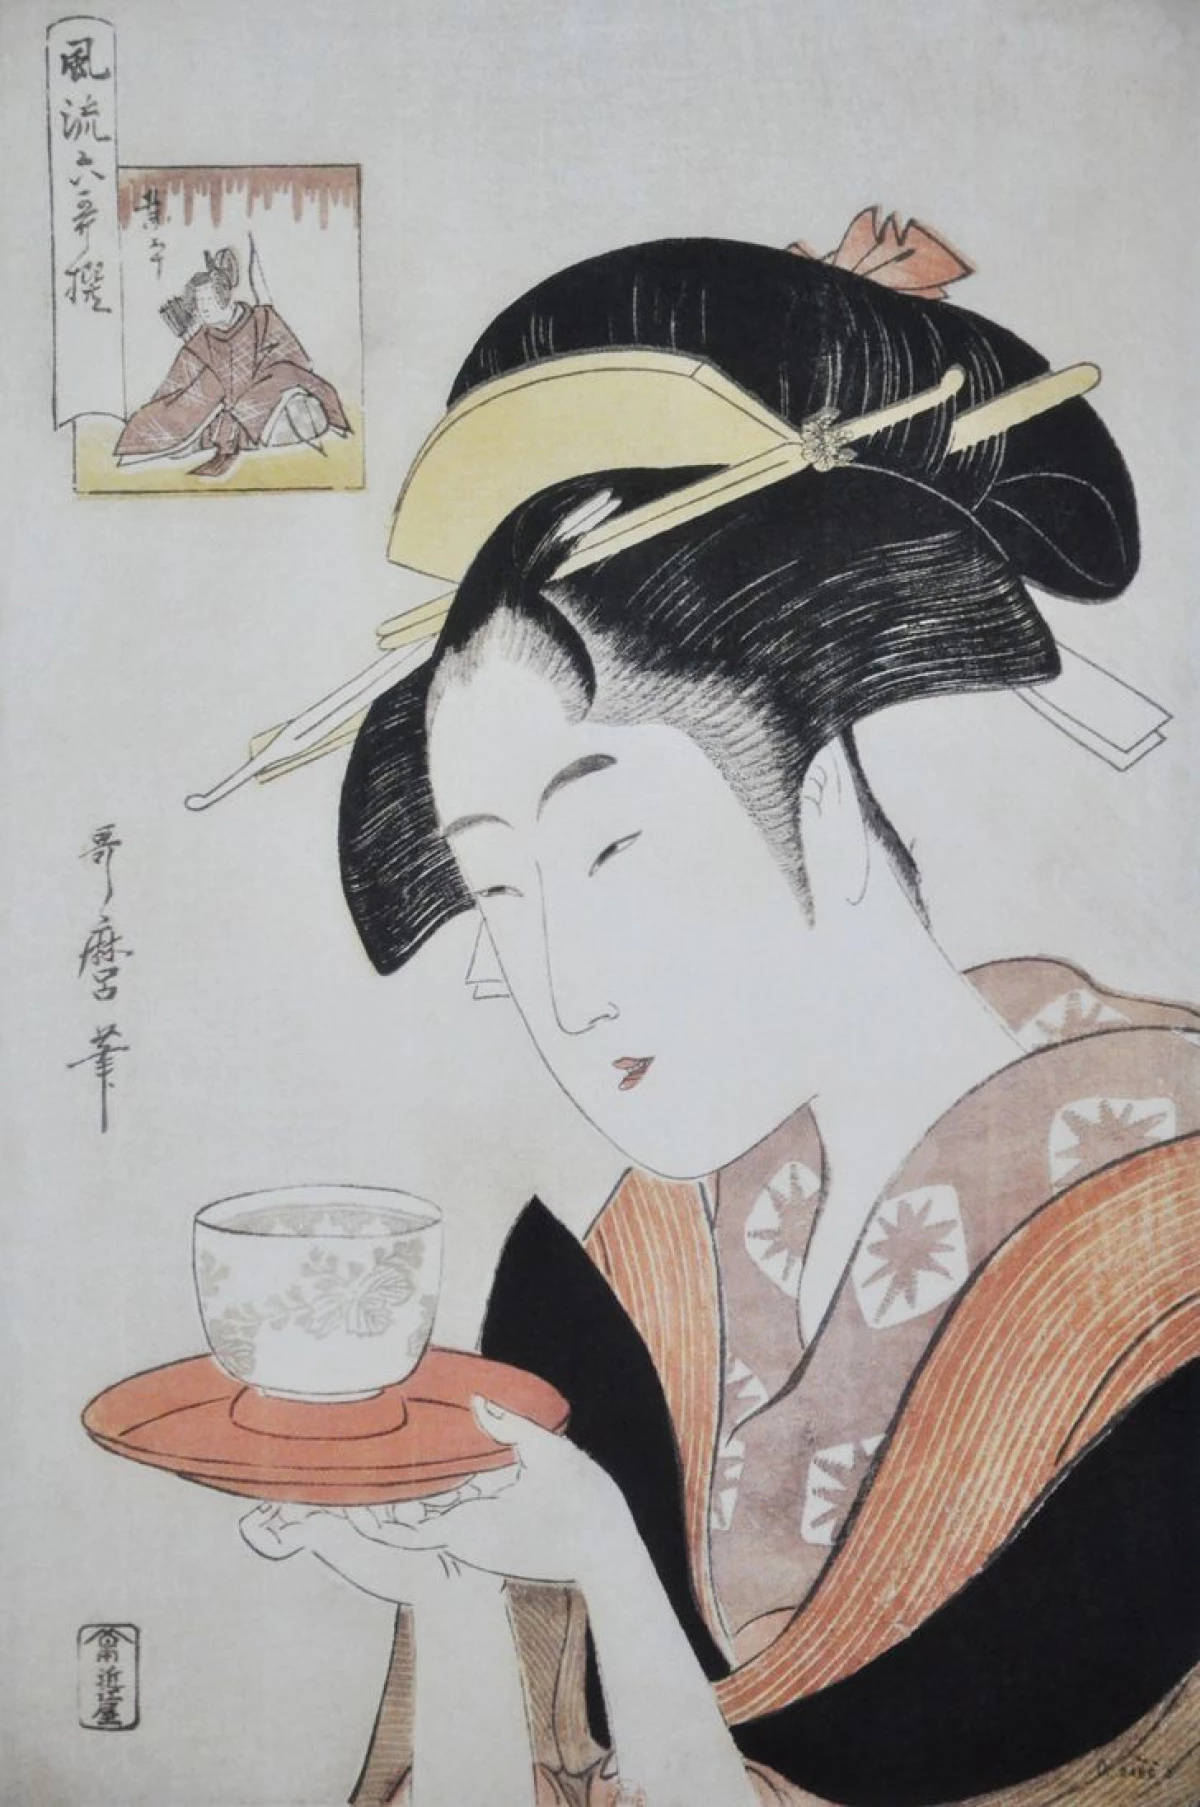 9 відаў японскага мастацтва, якія пакарылі ўвесь свет сваёй самабытнасцю